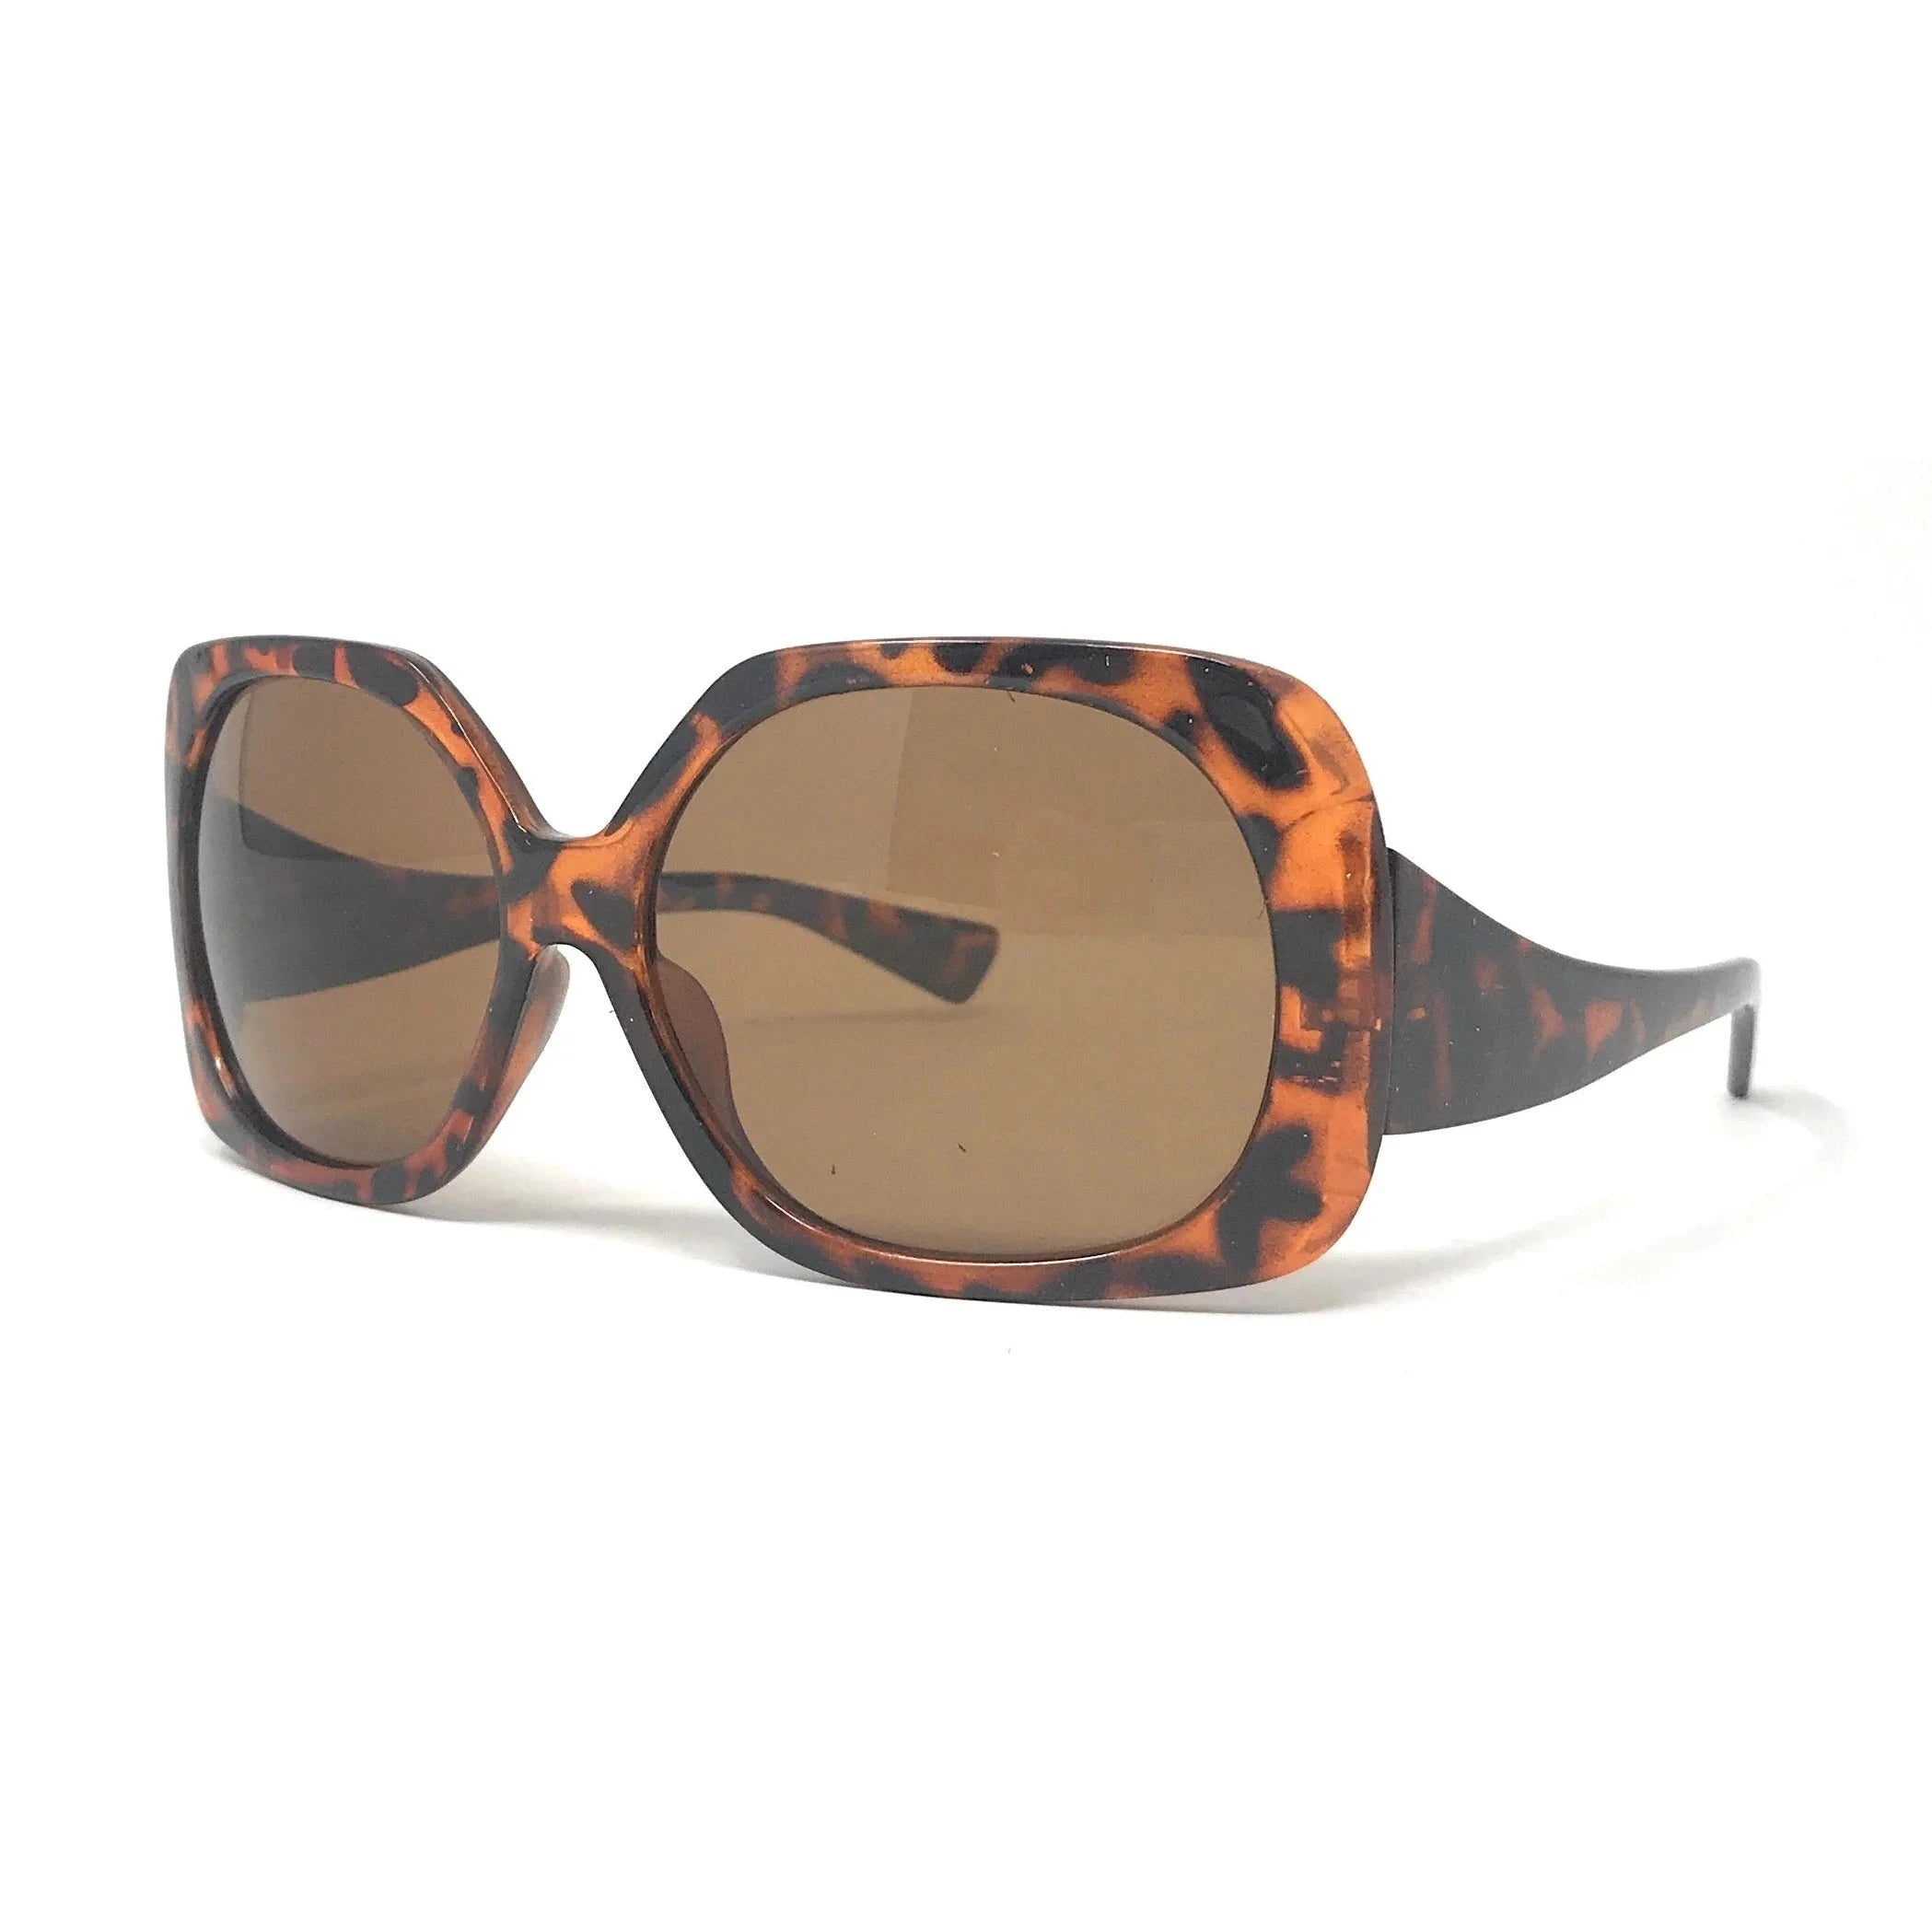 Tortoiseshell Modette Vintage Inspired Sunglasses